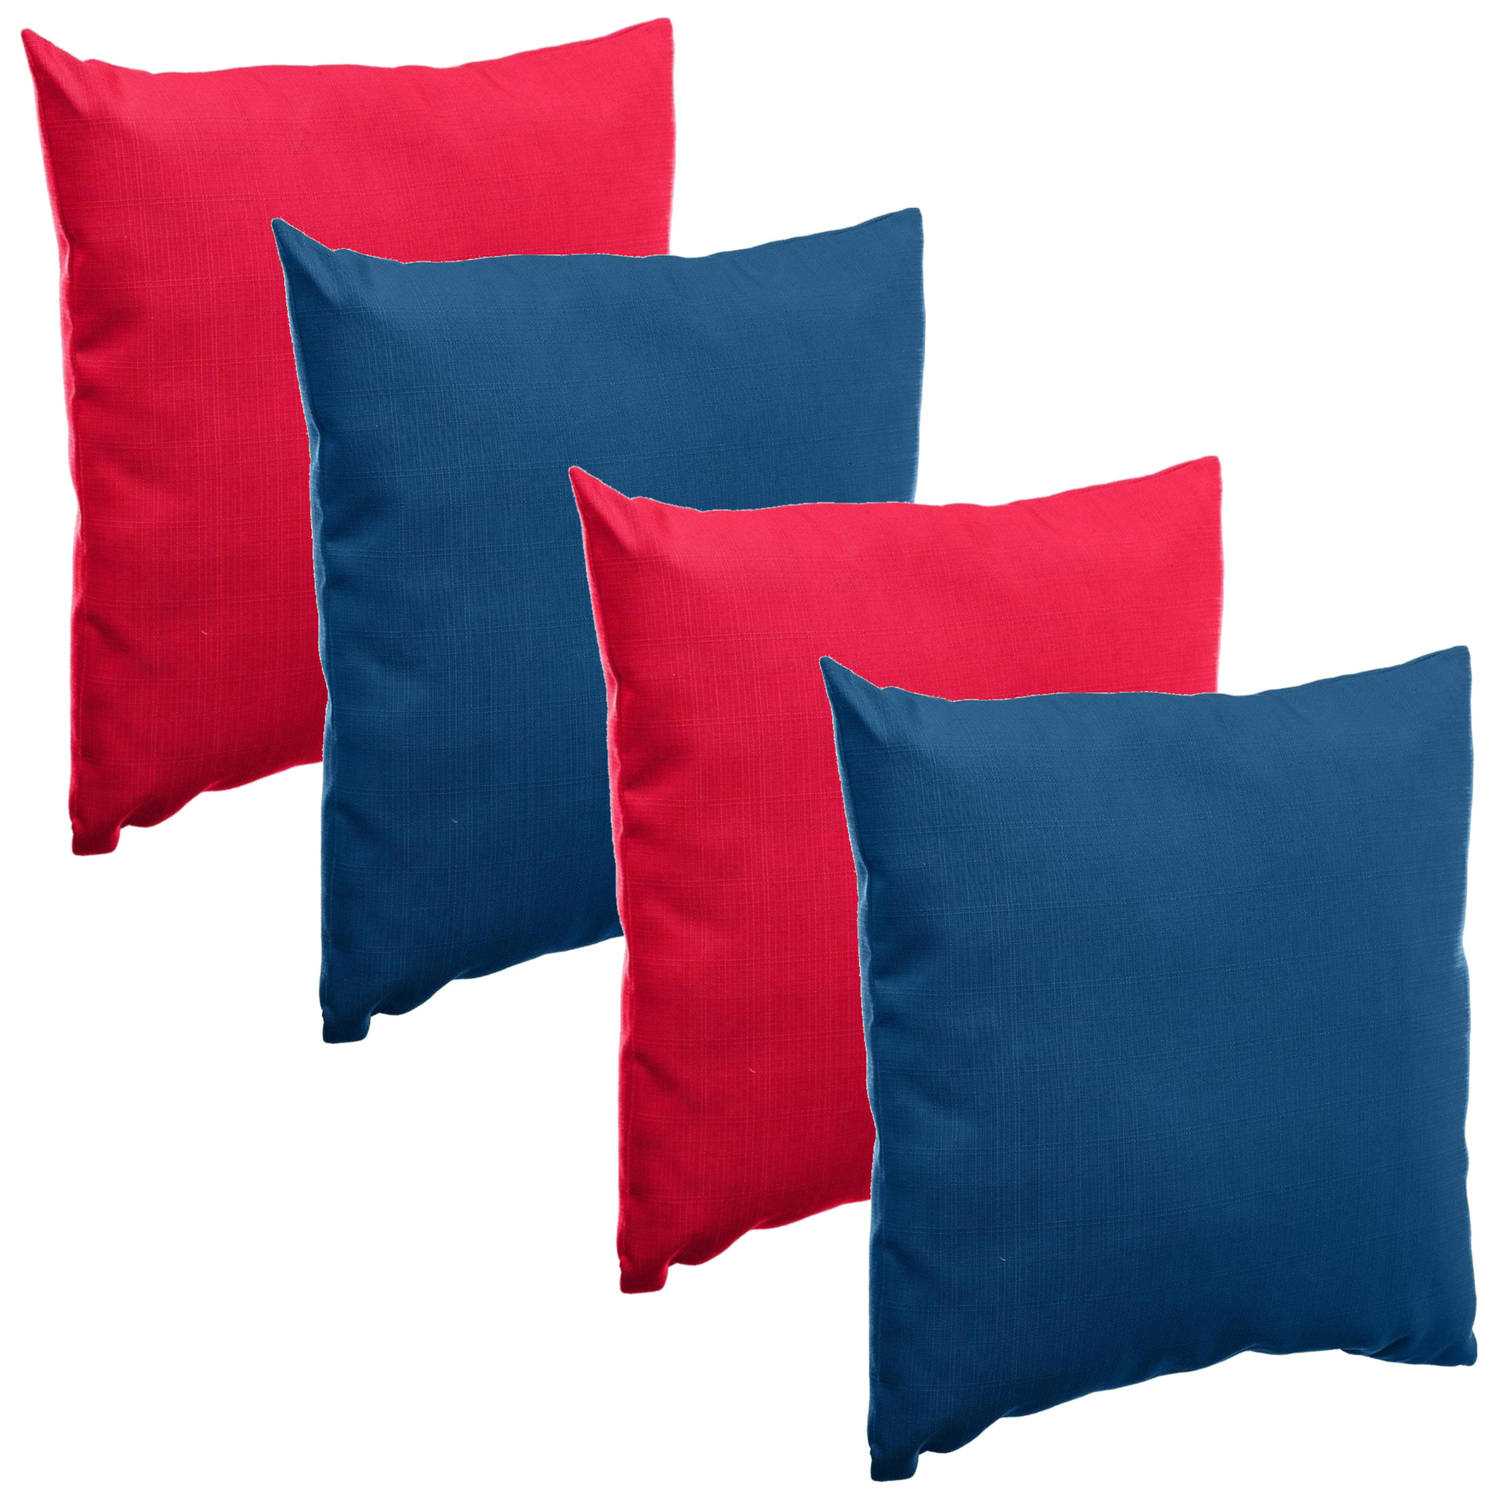 Bank-sier-tuin kussens voor binnen-buiten set 4x stuks rood-blauw 40 x 40 cm Sierkussens